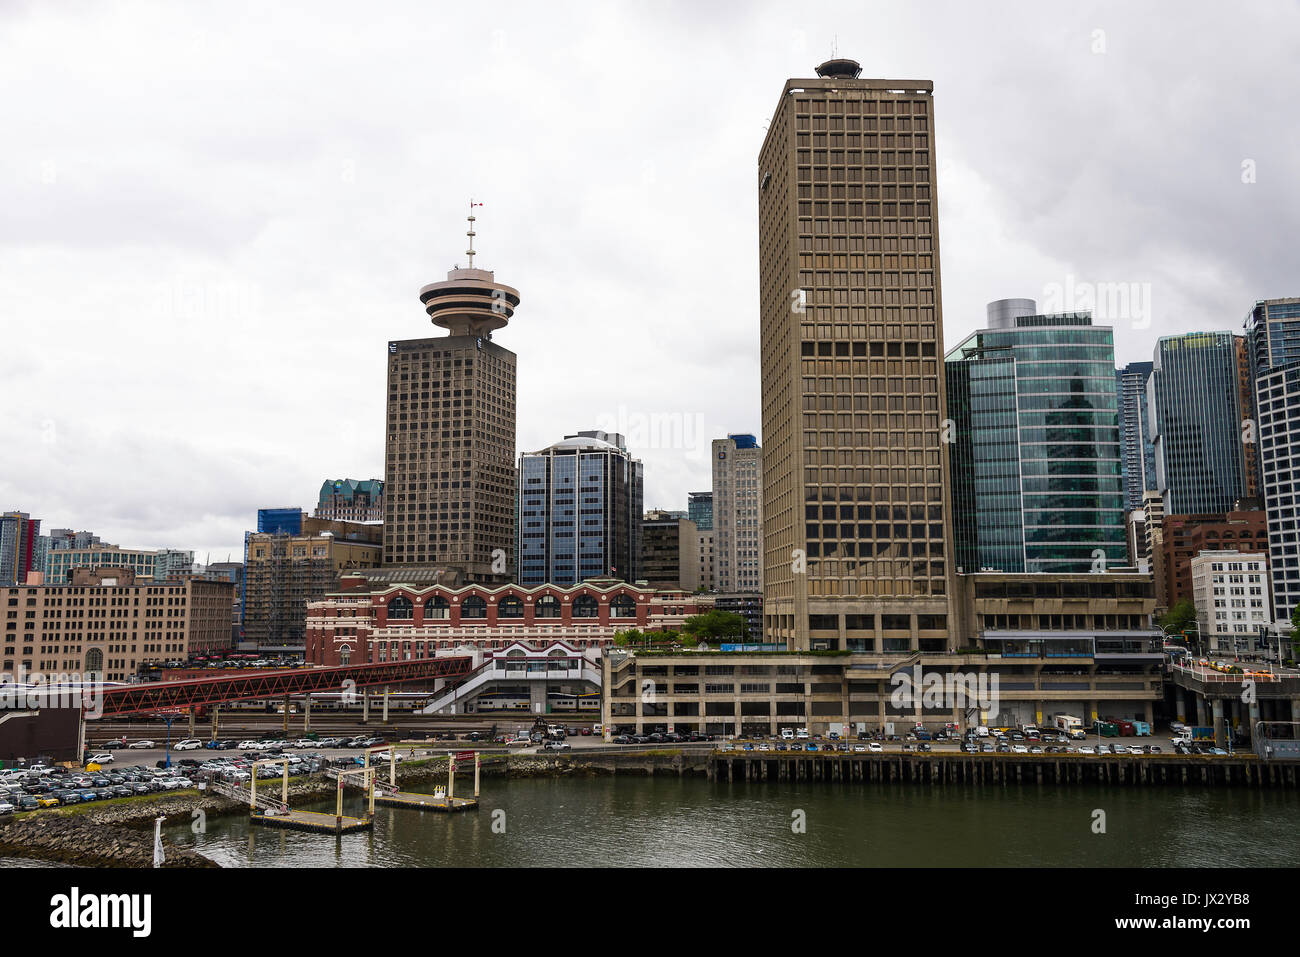 Le centre du port et d'observation de la tour de guet de gratte-ciel dans le quartier central des affaires du centre-ville de Vancouver, British Columbia Canada Banque D'Images